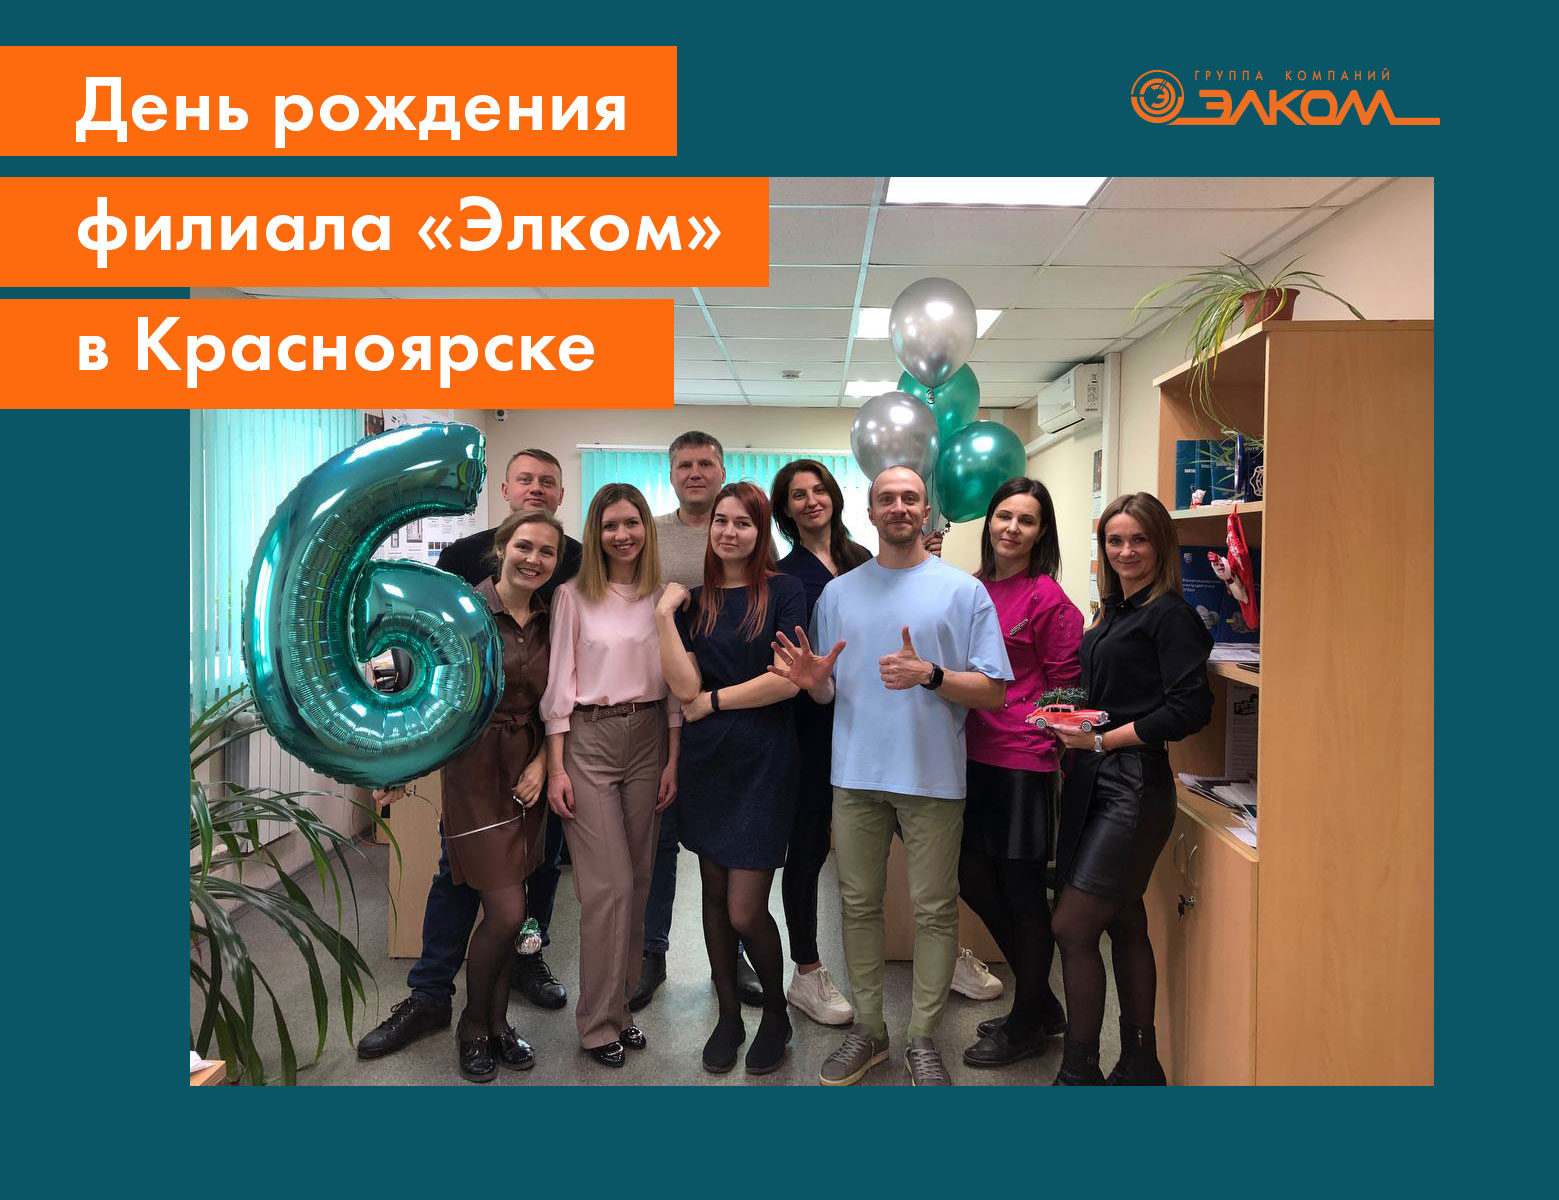 День рождения офиса «Элком» в Красноярске